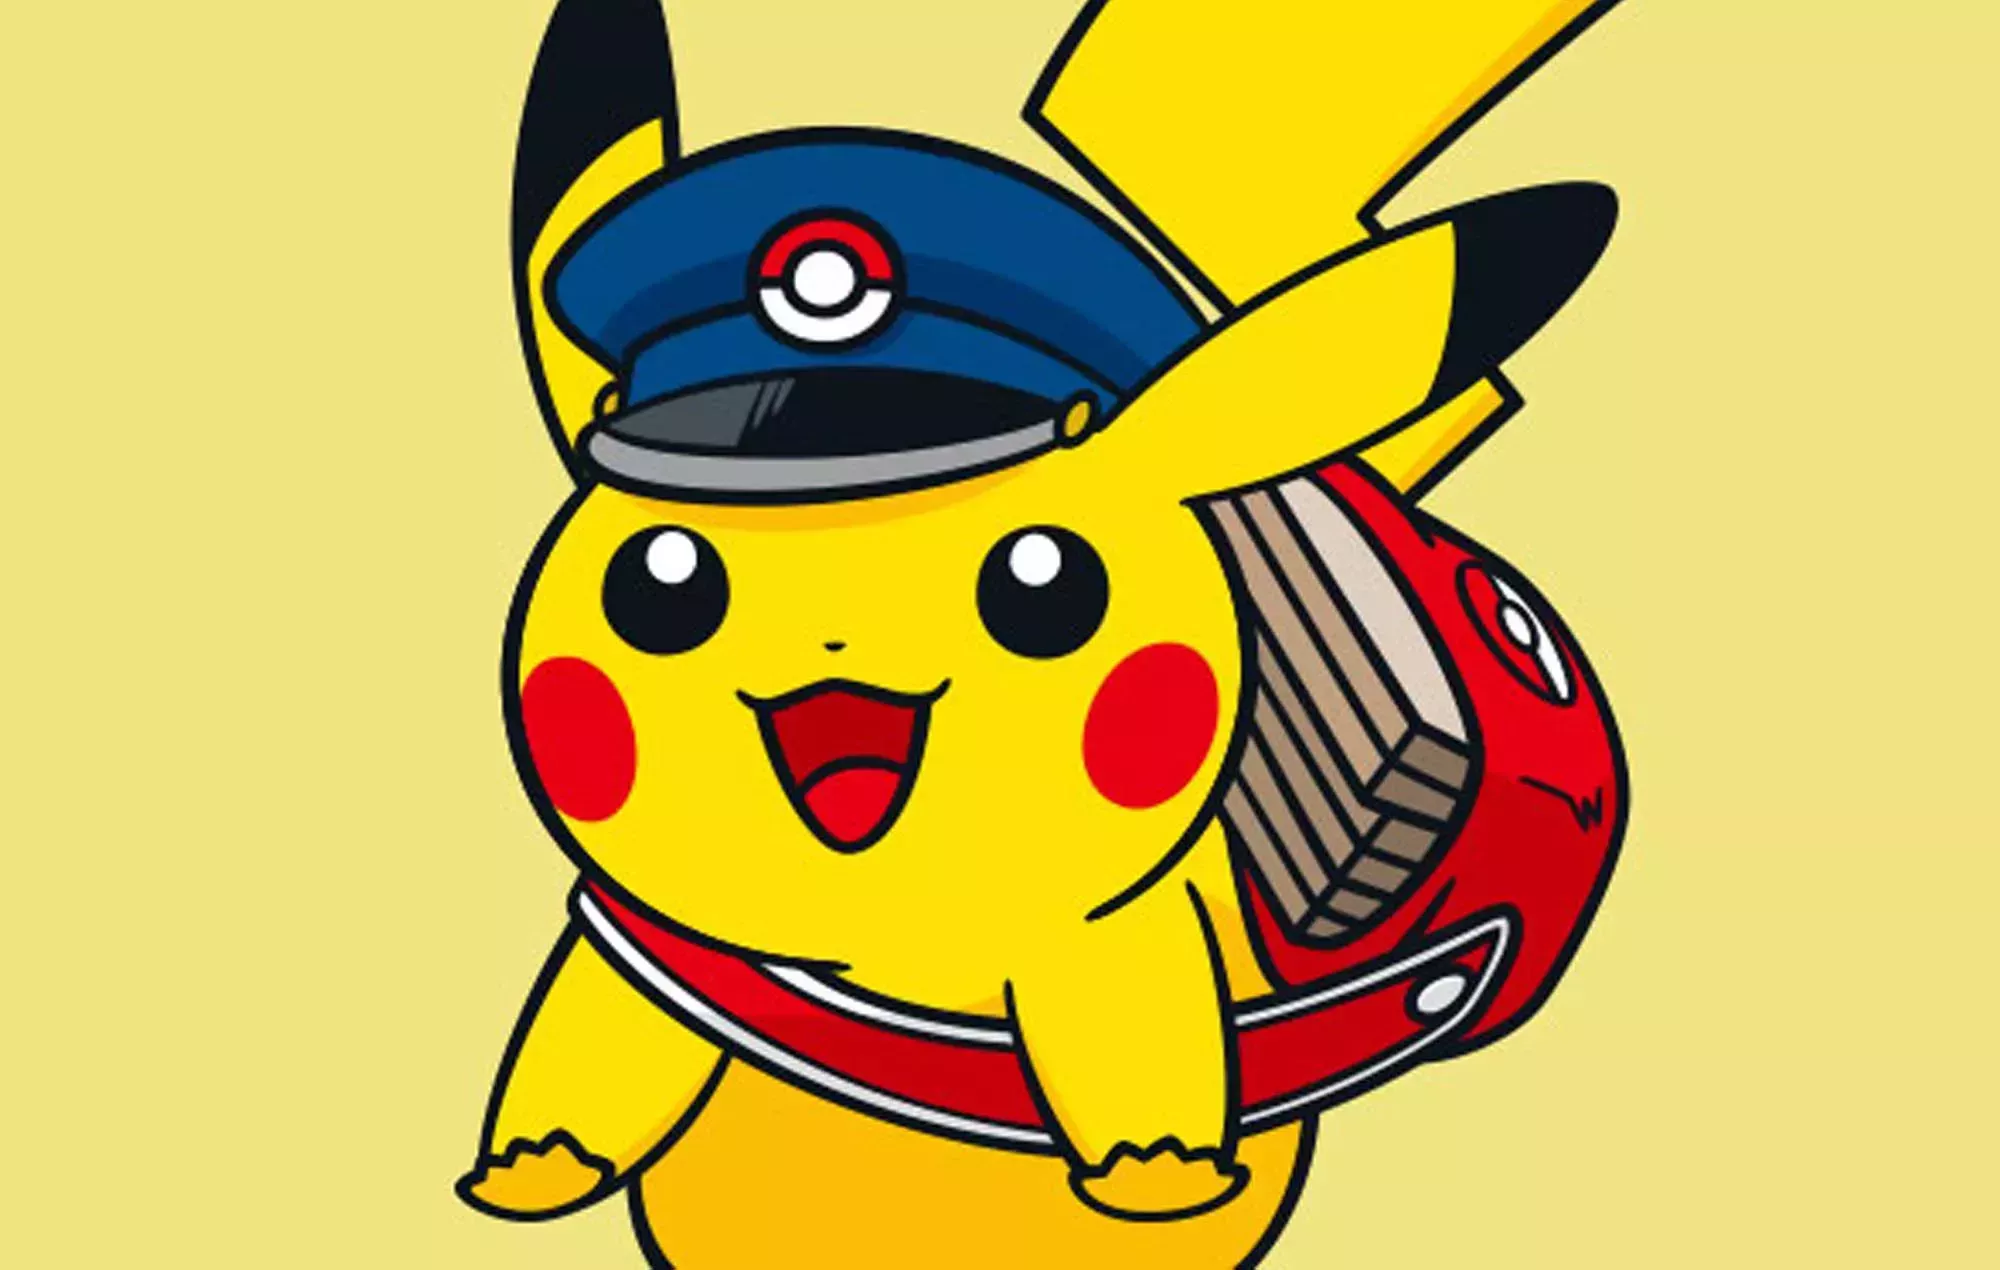 Logan Paul compra la carta más cara de 'Pokémon' y la vende como NFT